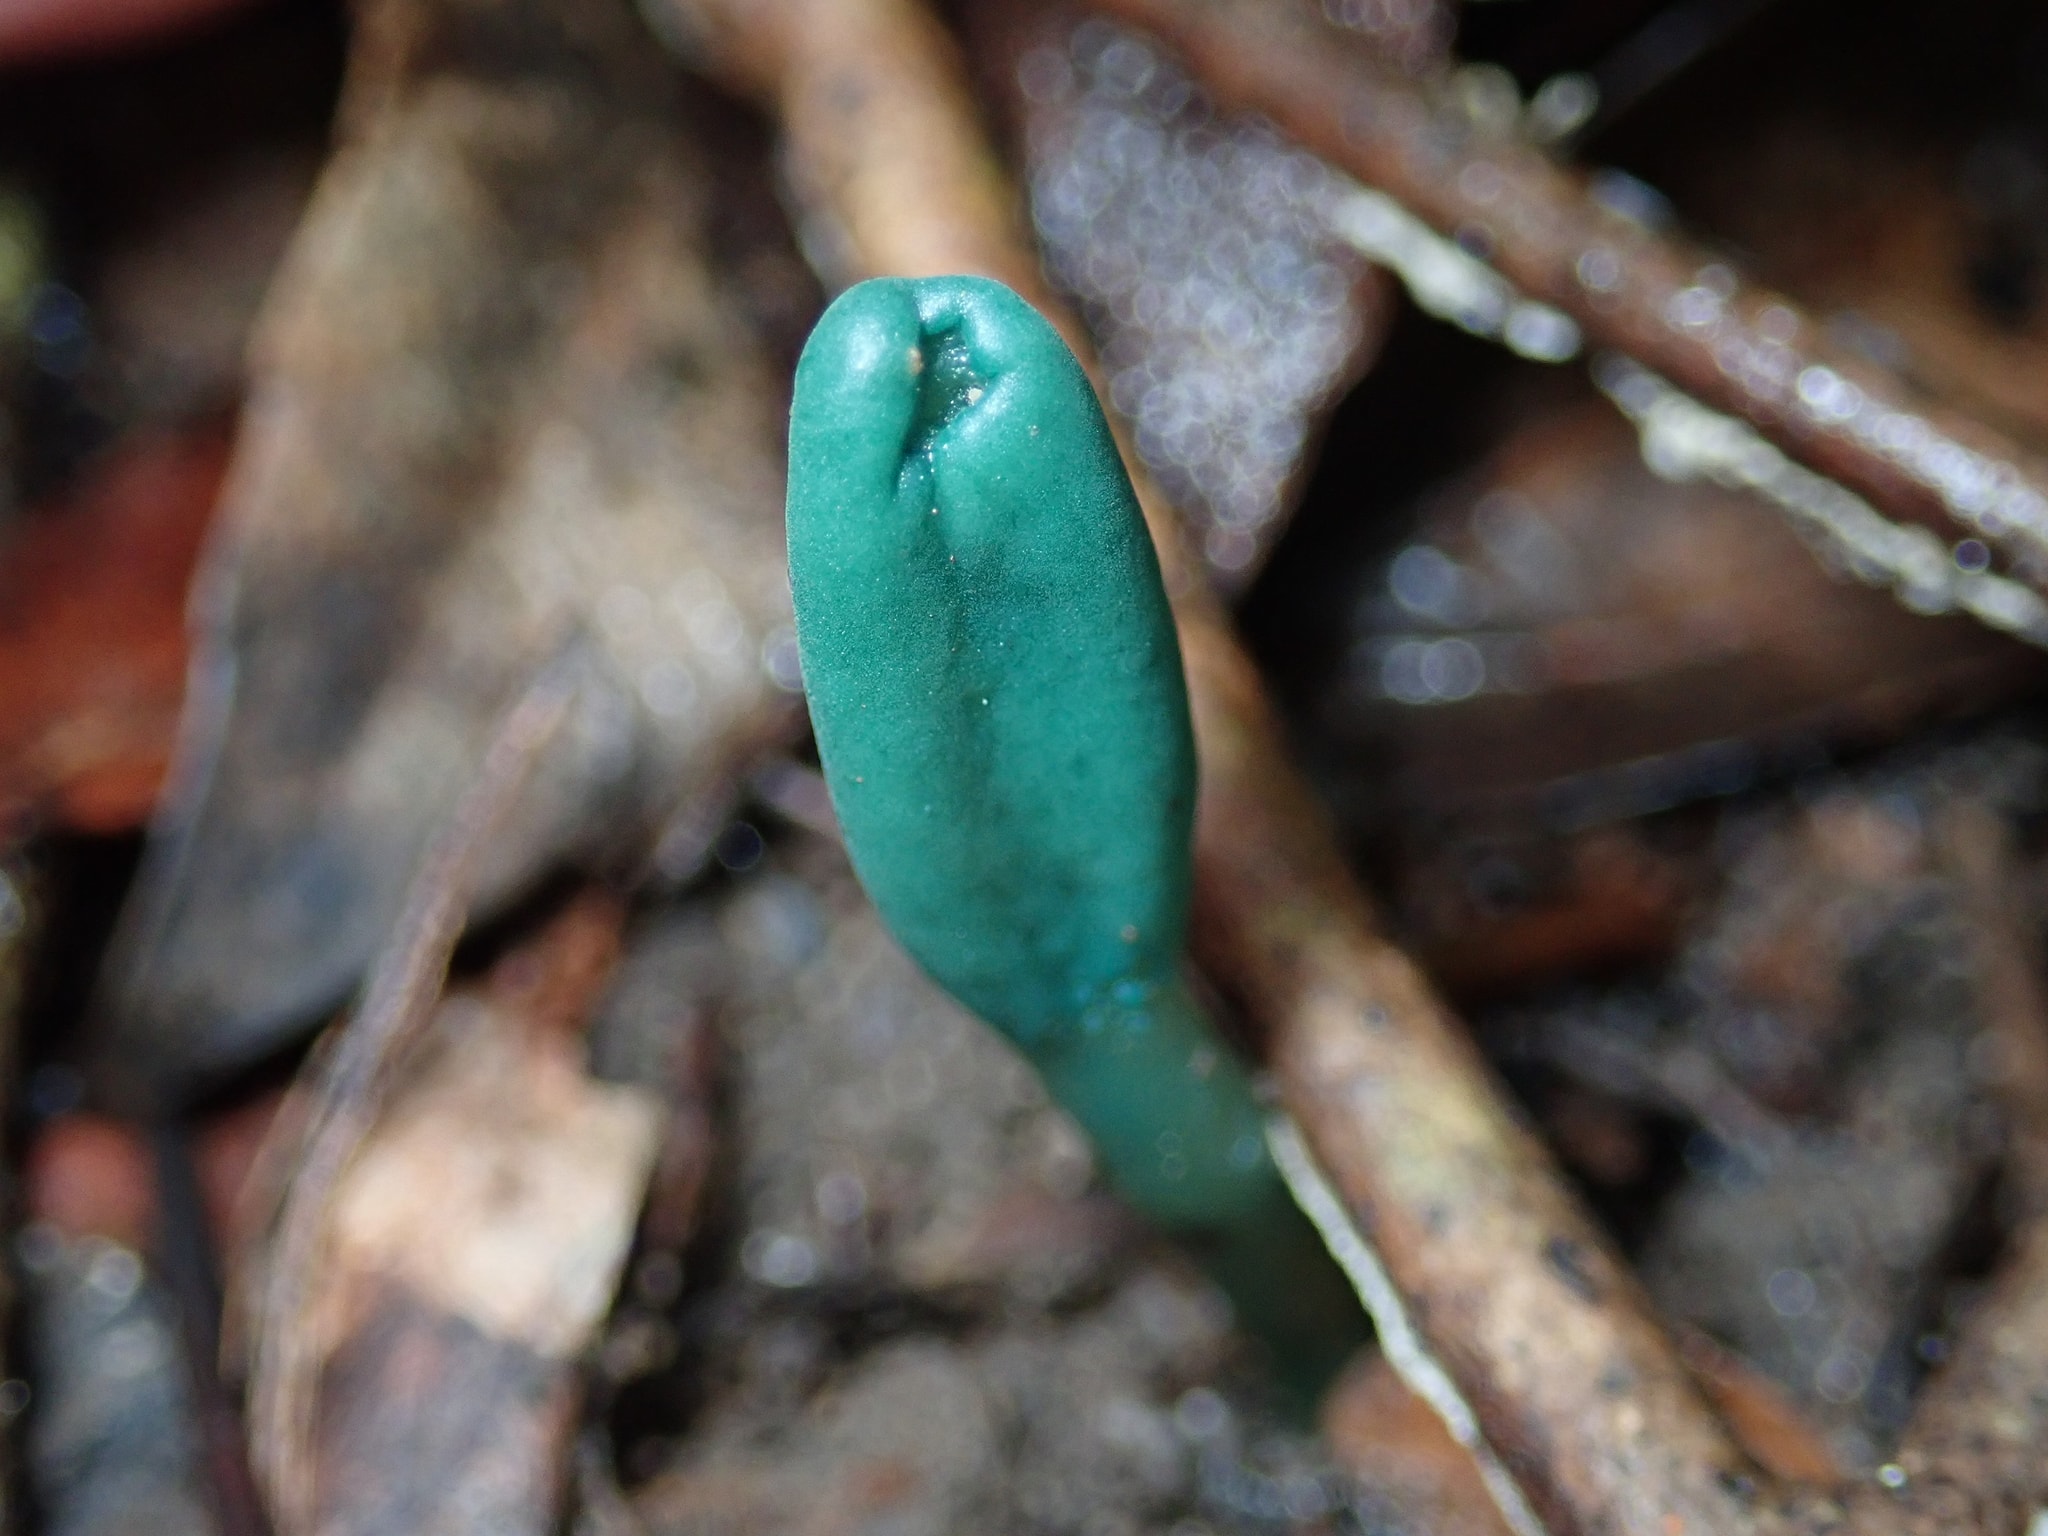 Microglossum viride - Микроглоссум зелёный, Зелёный язык